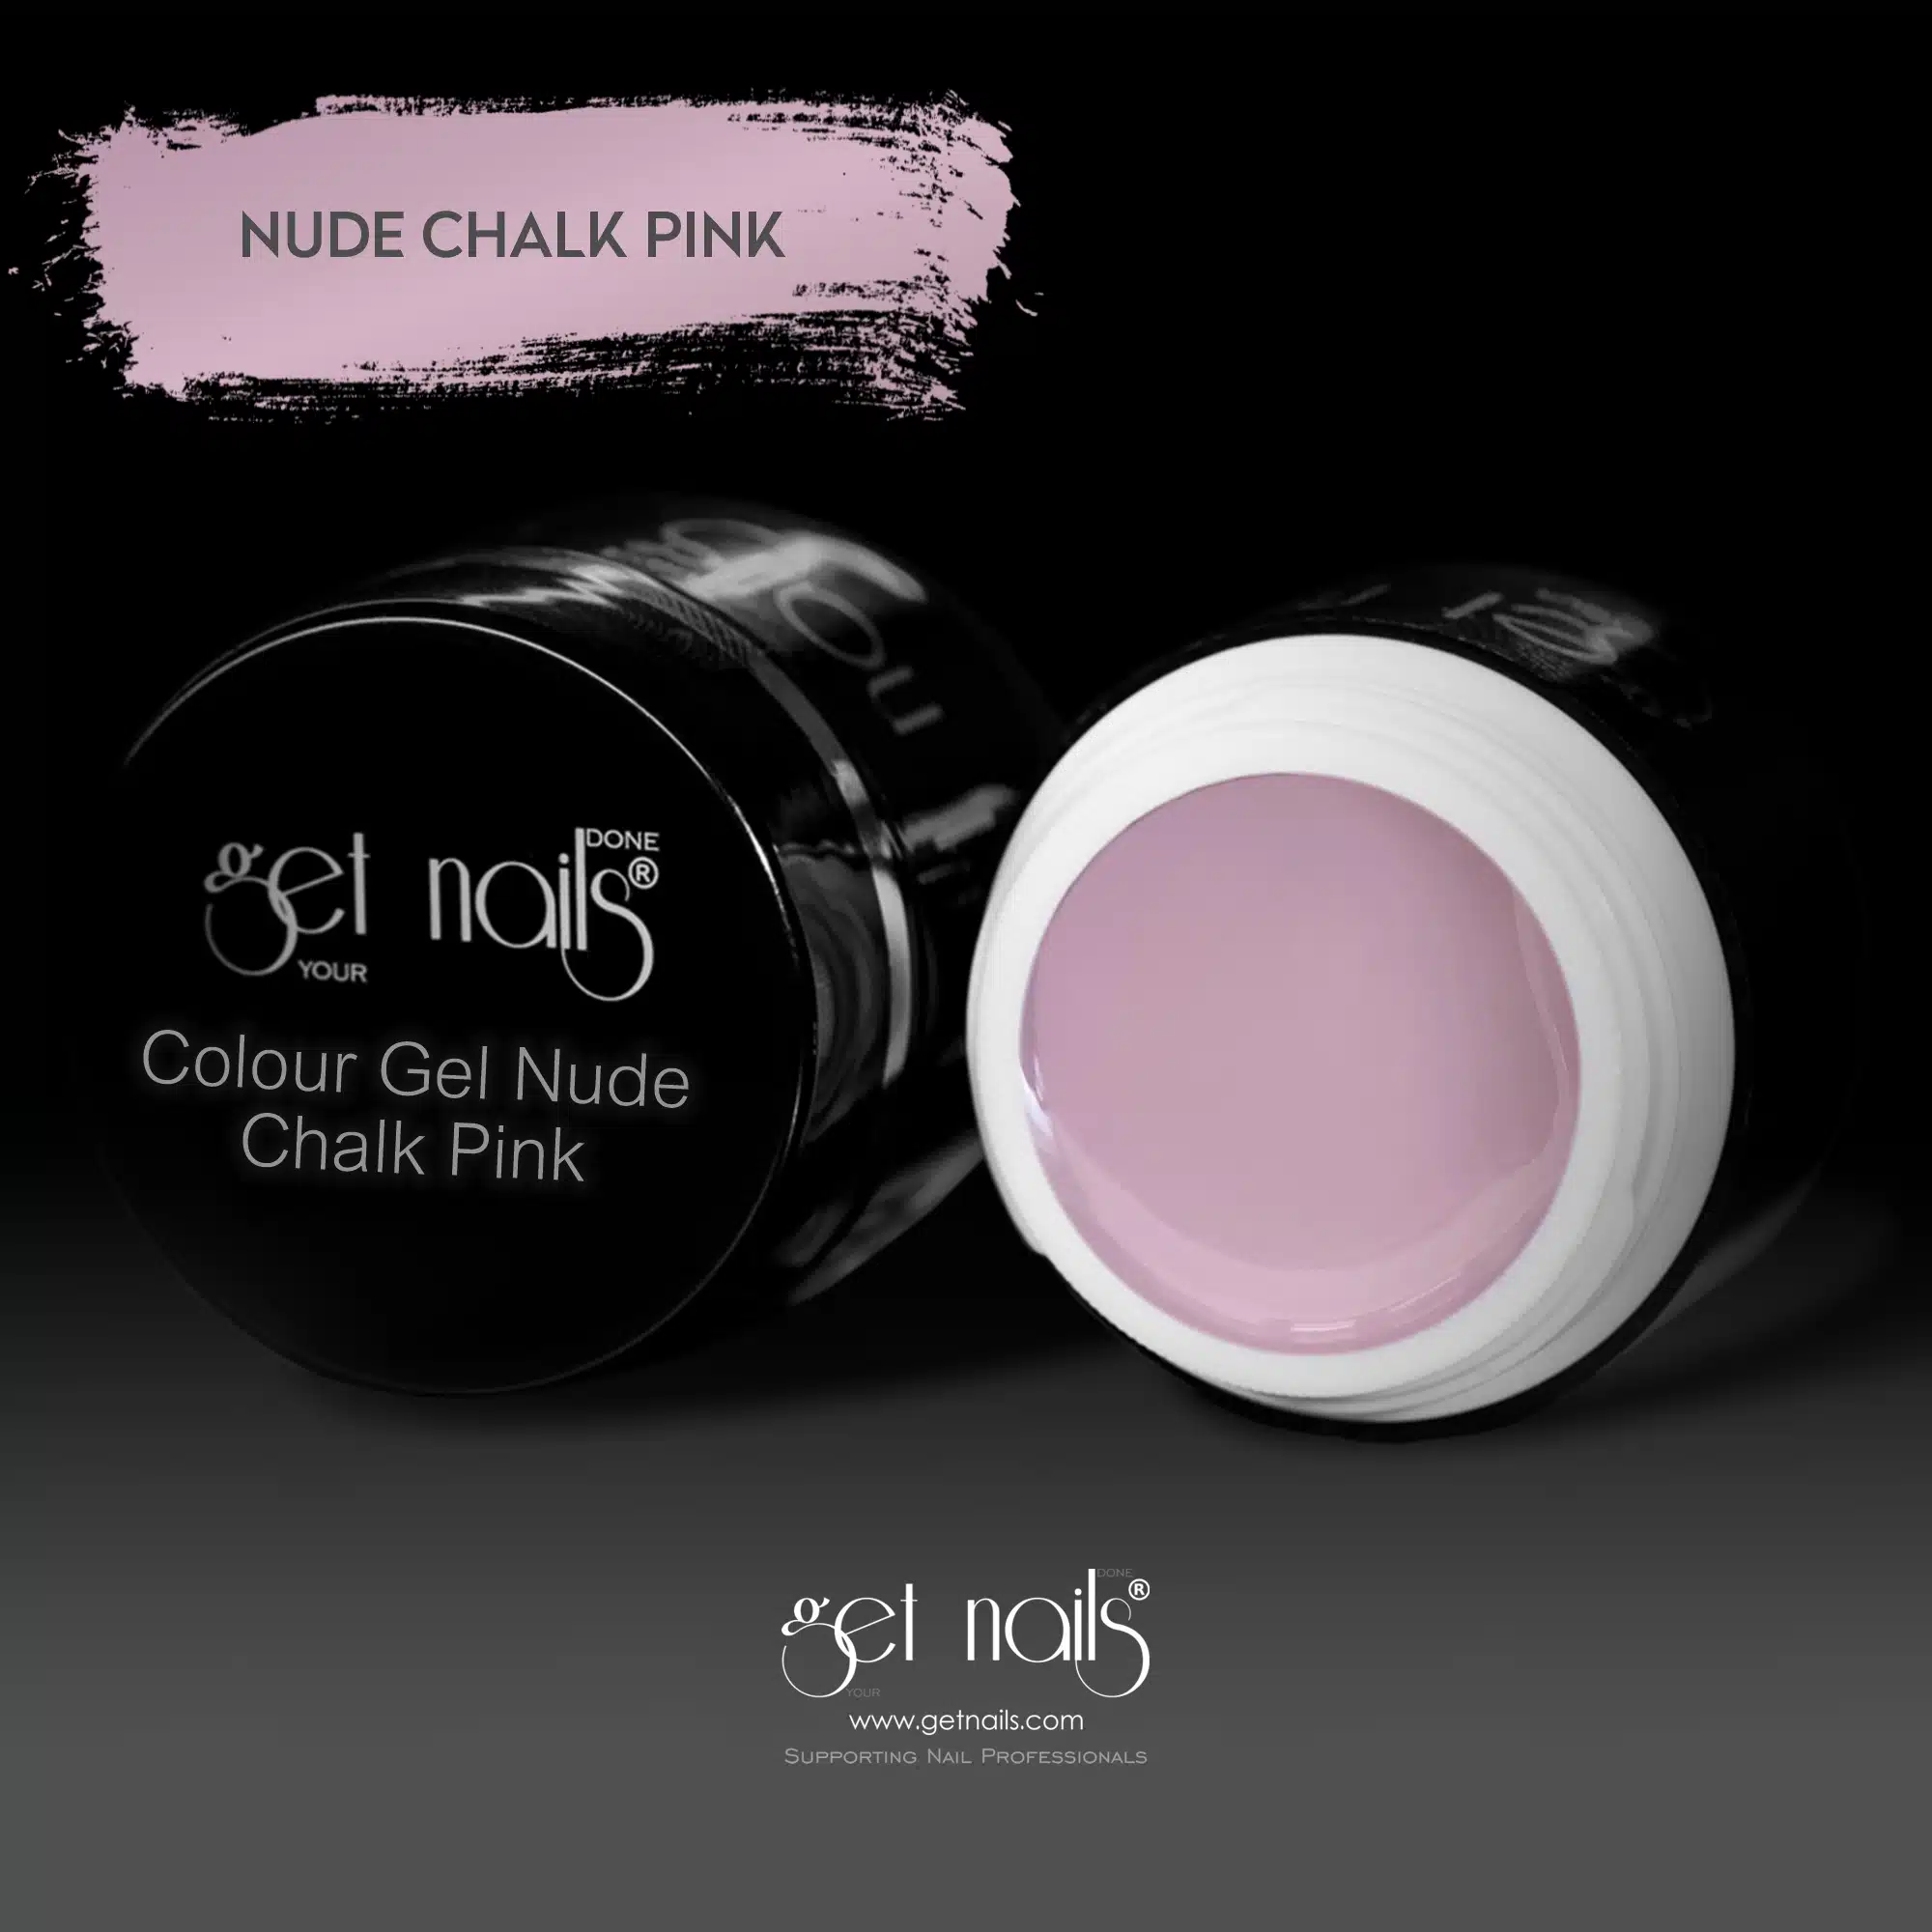 Get Nails Austria - Color Gel Nude Chalk Pink 5g